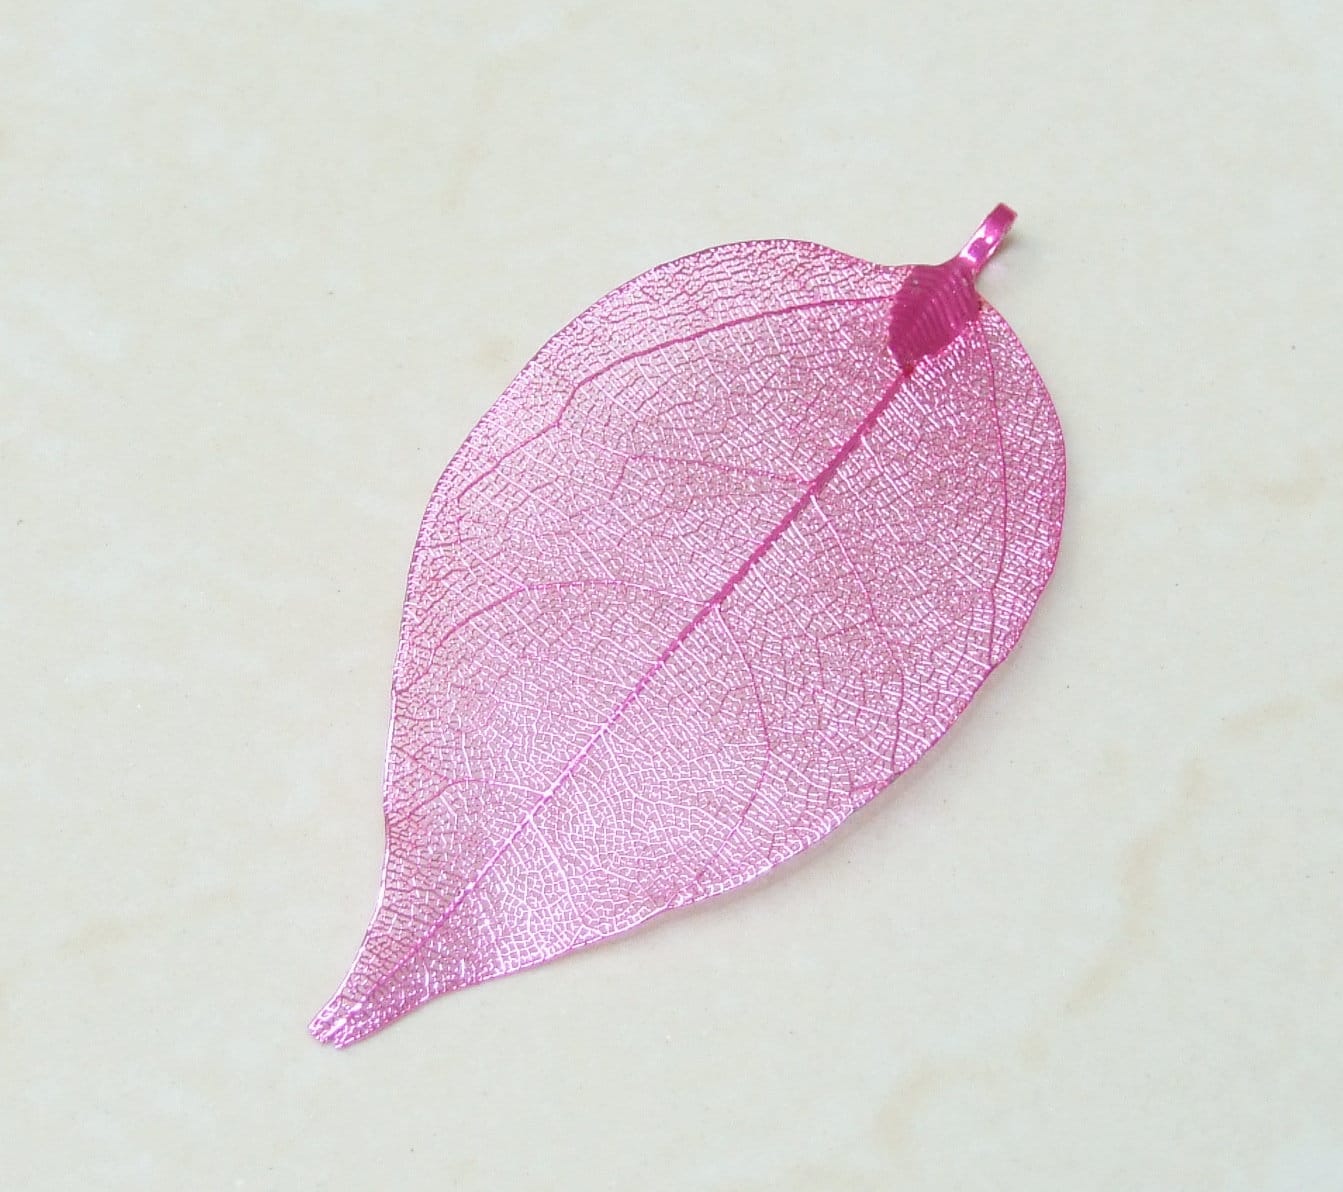 Liquid Metal Leaf Pendant - Large Leaf Pendant - Autumn Leaf - Pink - BOHO - Tribal - 35mm x 70mm - 2248